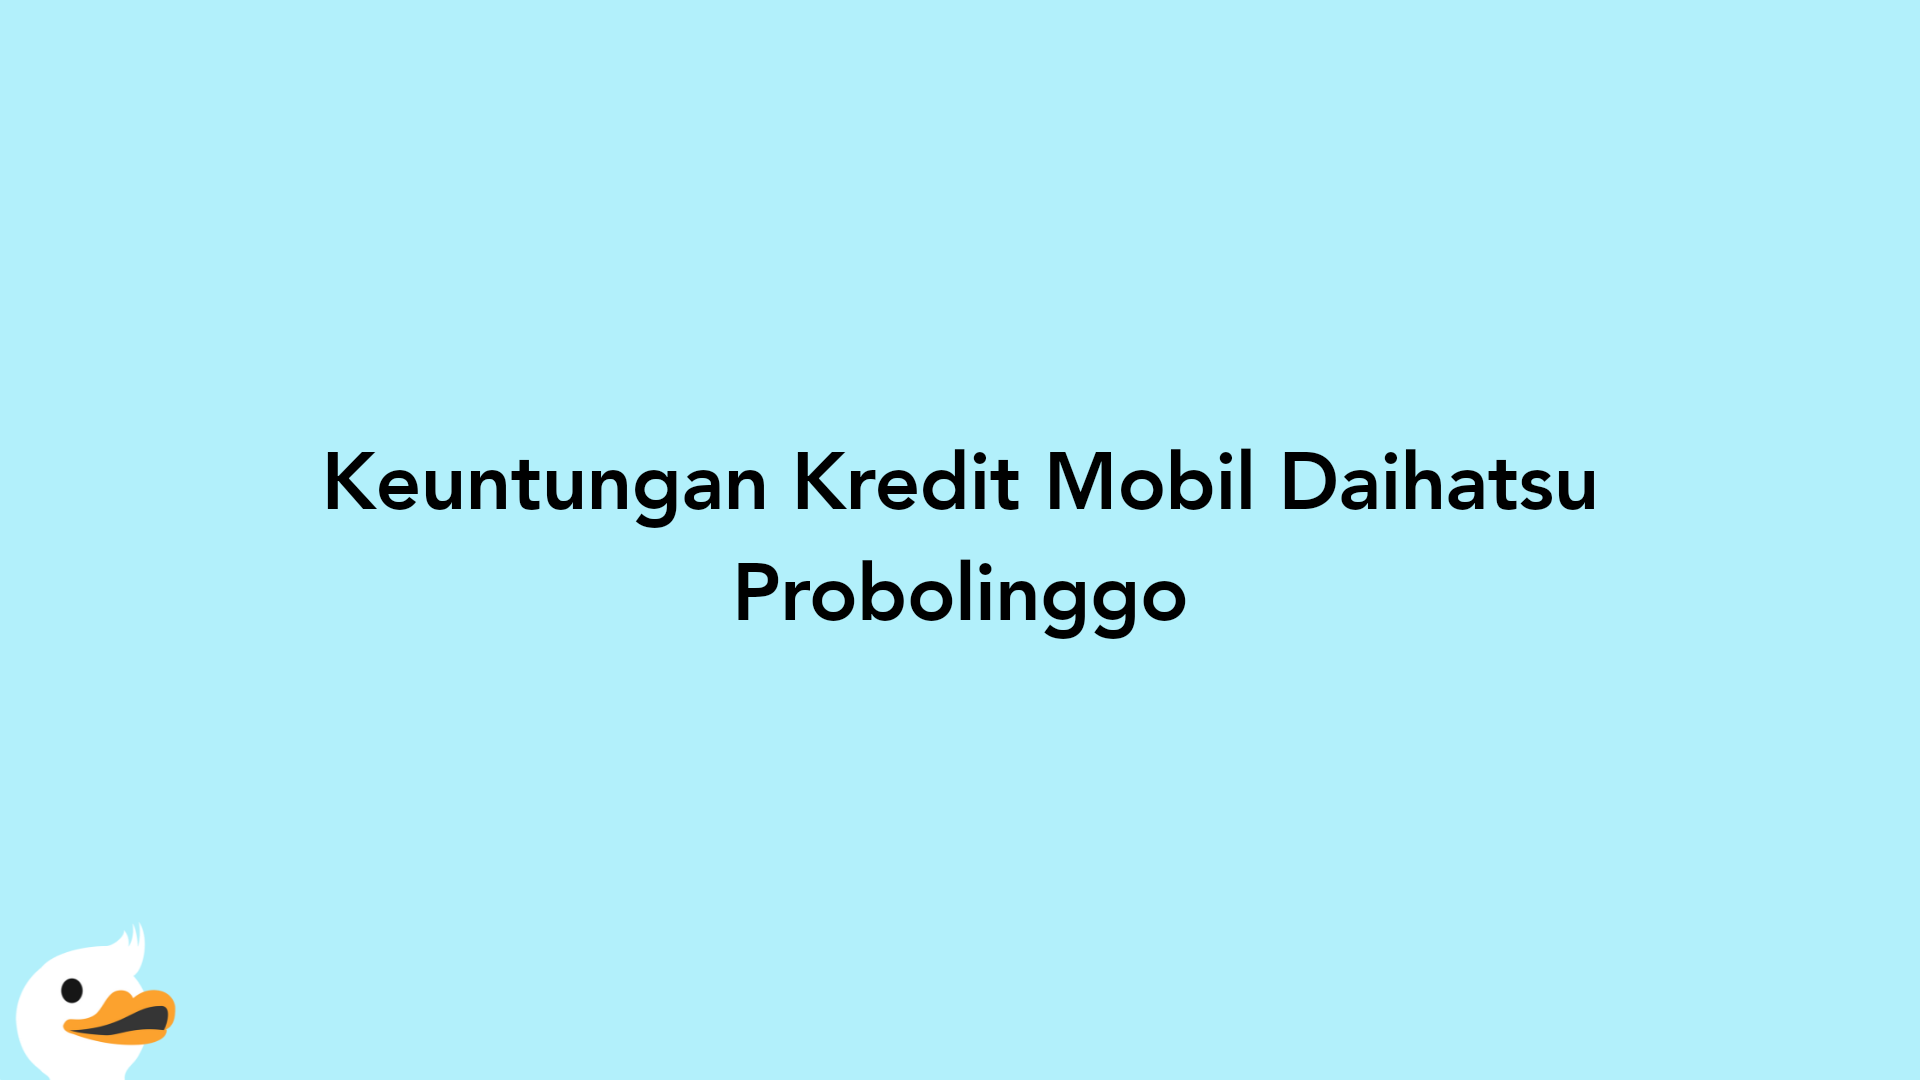 Keuntungan Kredit Mobil Daihatsu Probolinggo